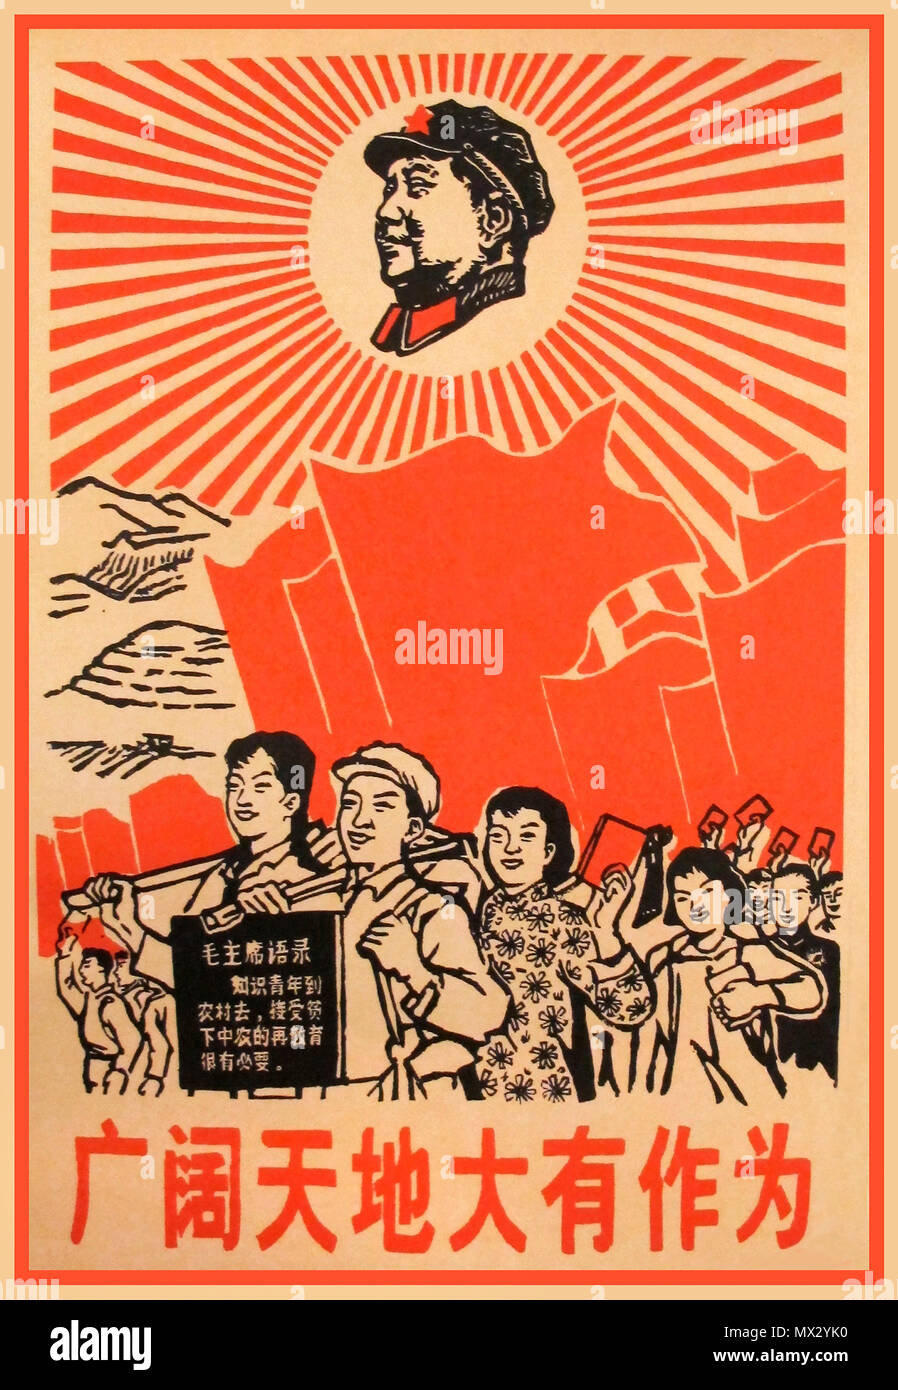 1967 Poster de propagande chinois d'époque, avec le président Mao Tsé-toung comme un soleil éclatant. Le message de propagande lit « VAST World of Réalisations », l'affiche de propagande communiste d'époque Banque D'Images